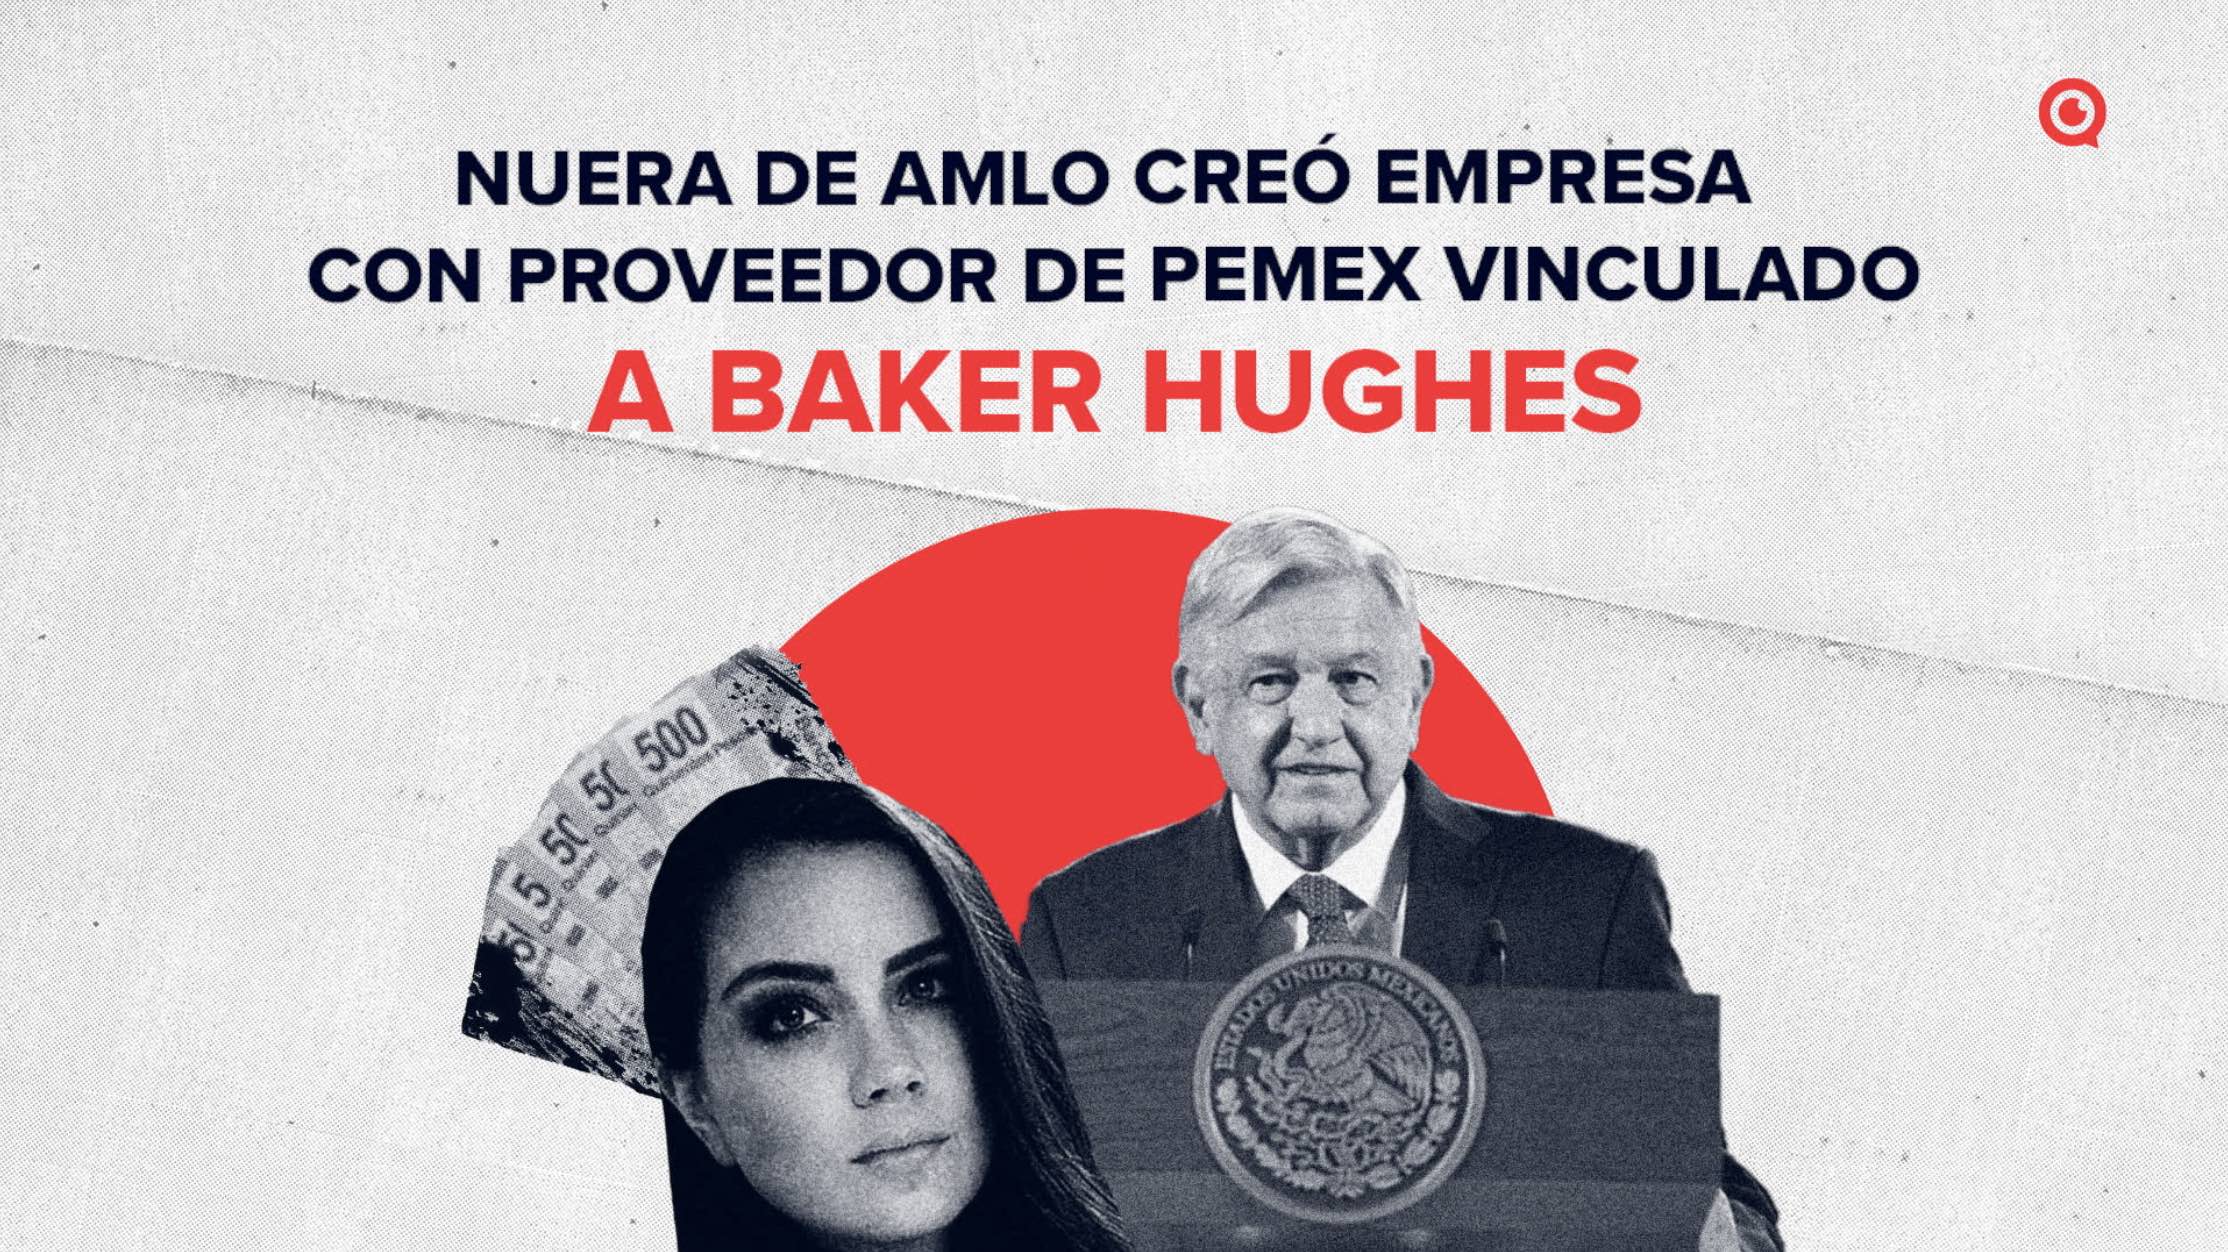 Nuera de AMLO creó empresa con proveedor de Pemex vinculado a Baker Hughes